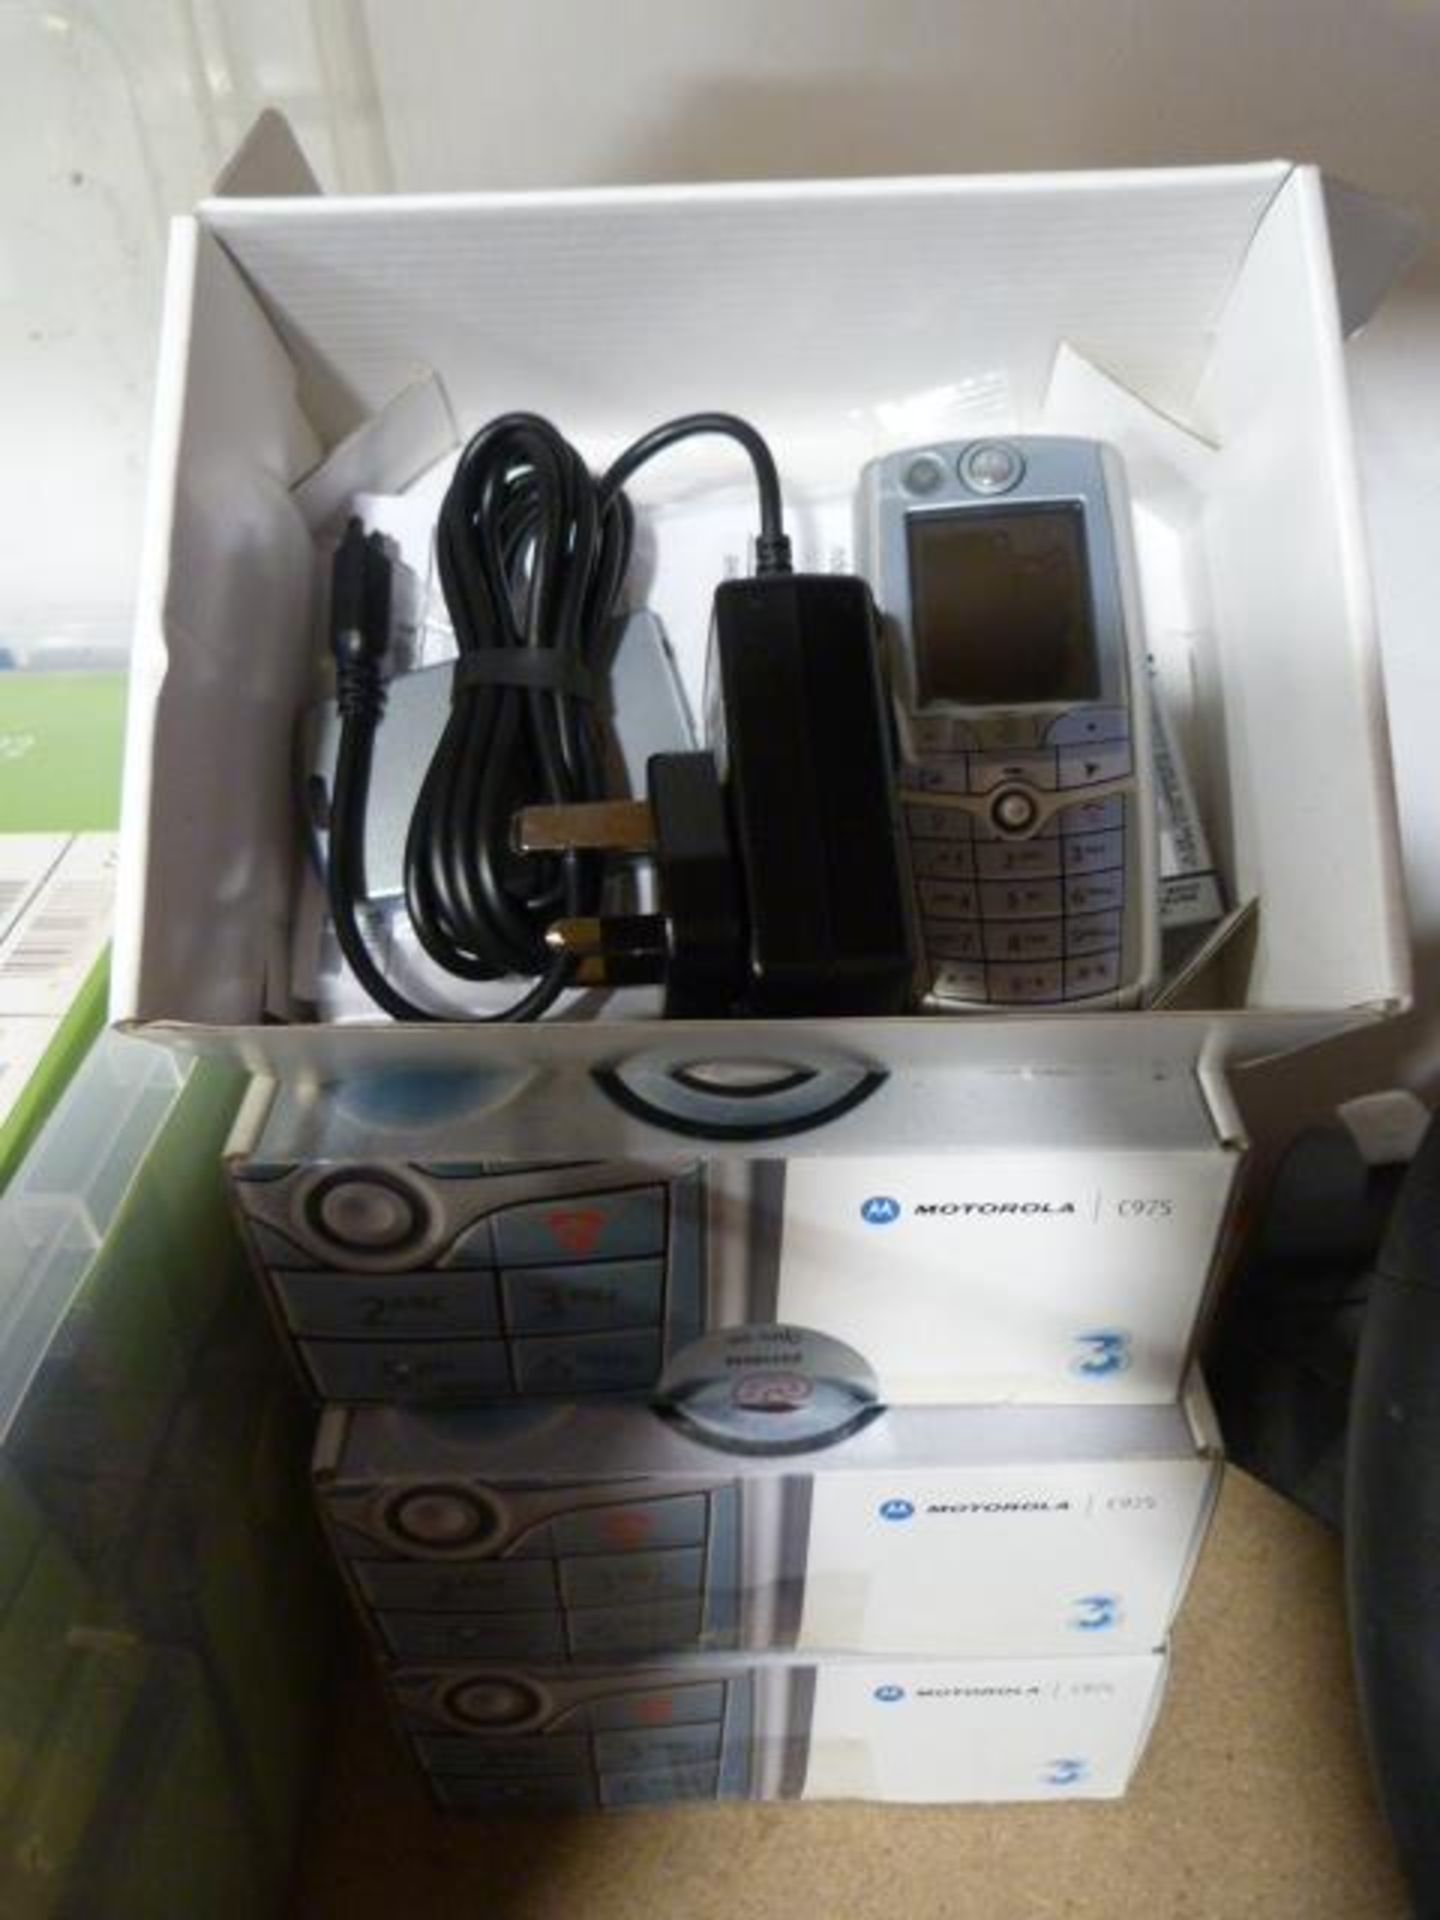 Four Motorola C975 Mobile Phones